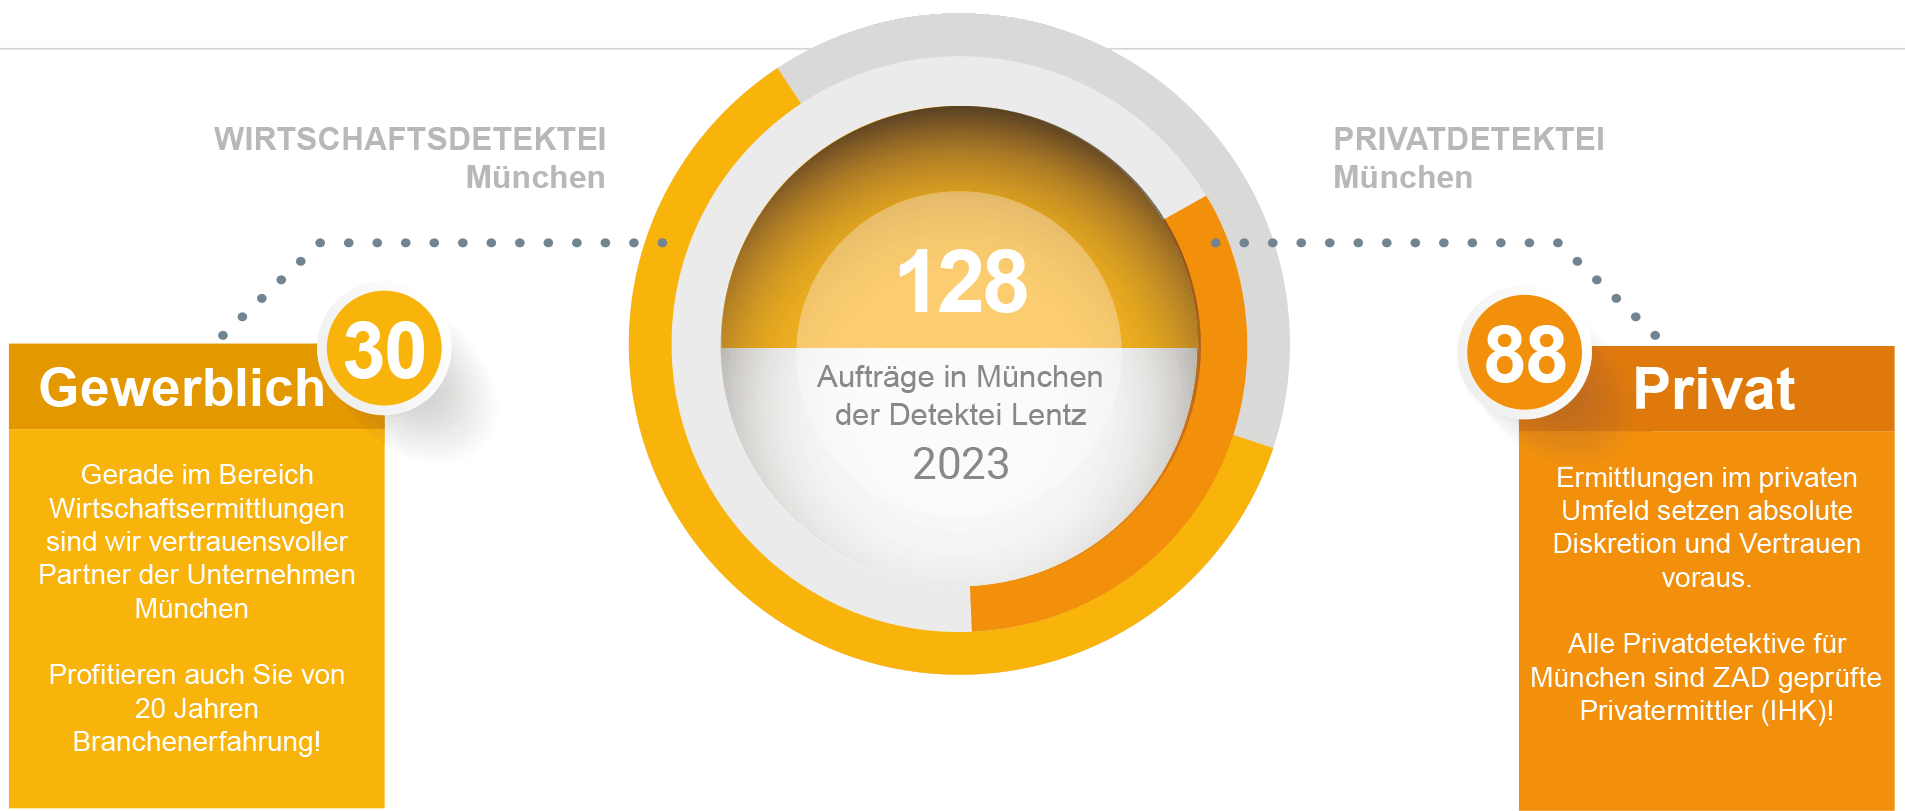 Aufträge für 2023 der Detektei München